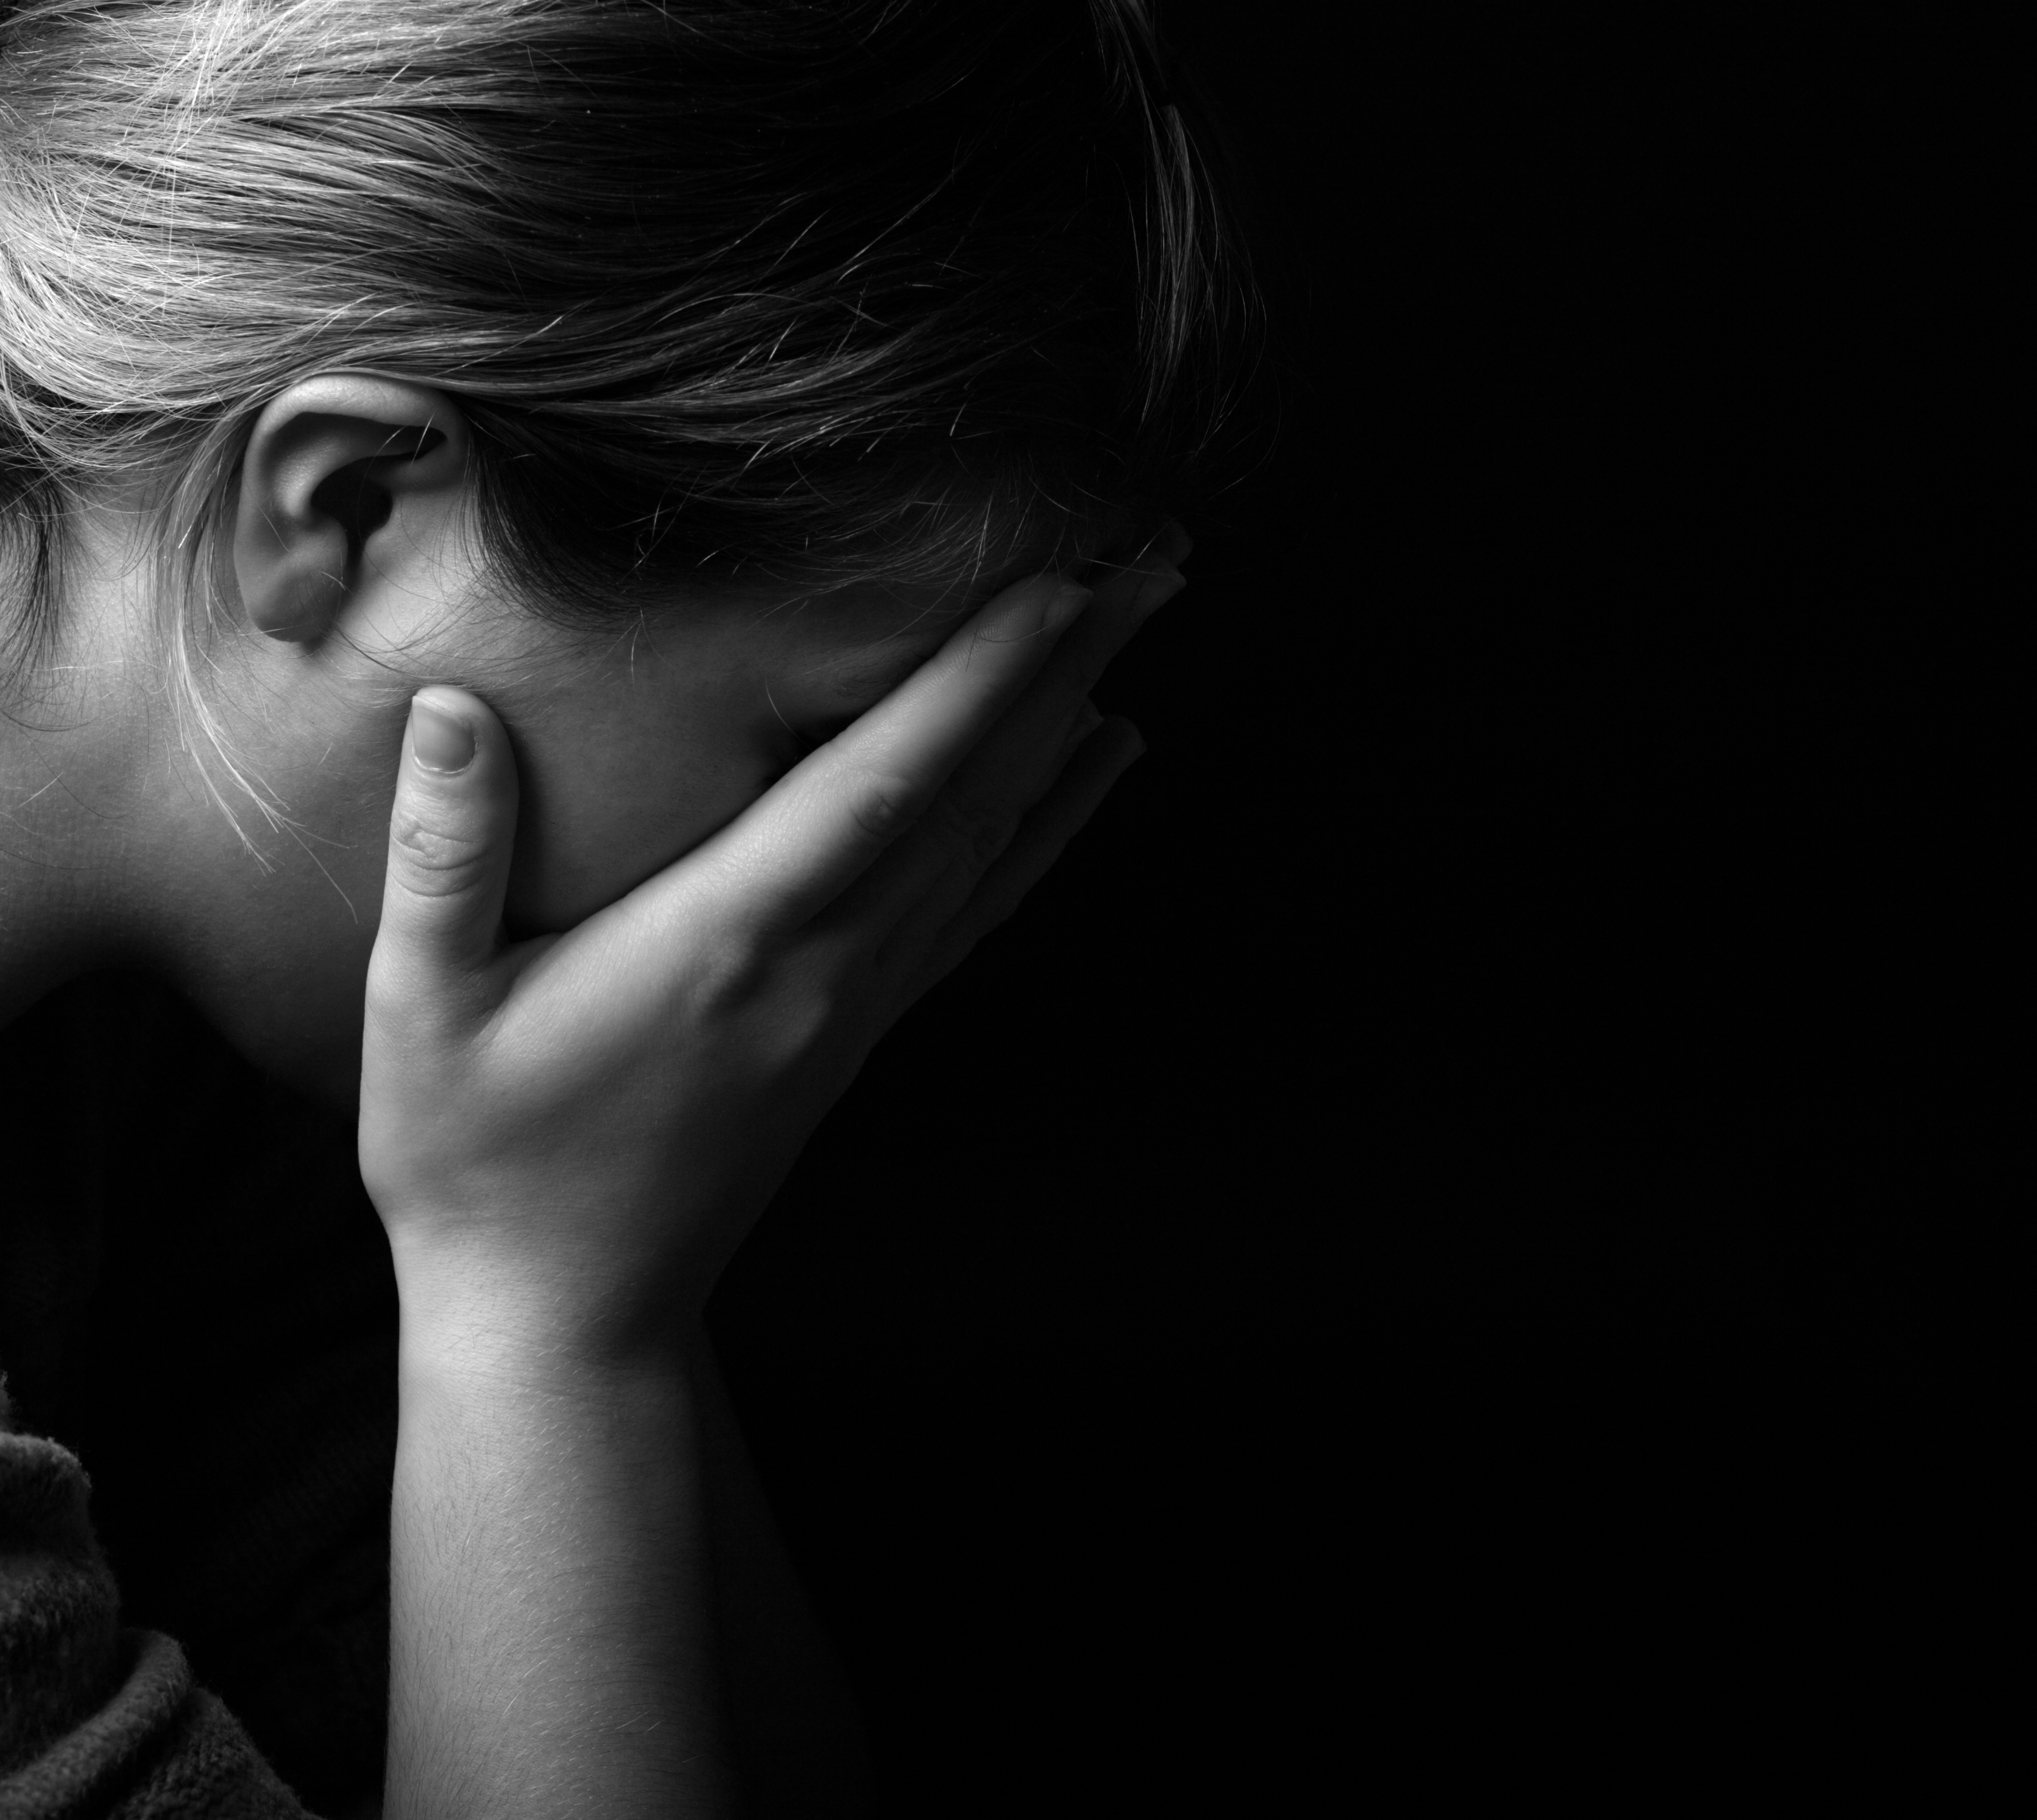 Femme se couvrant le visage de désespoir dans l'obscurité | Source : Shutterstock